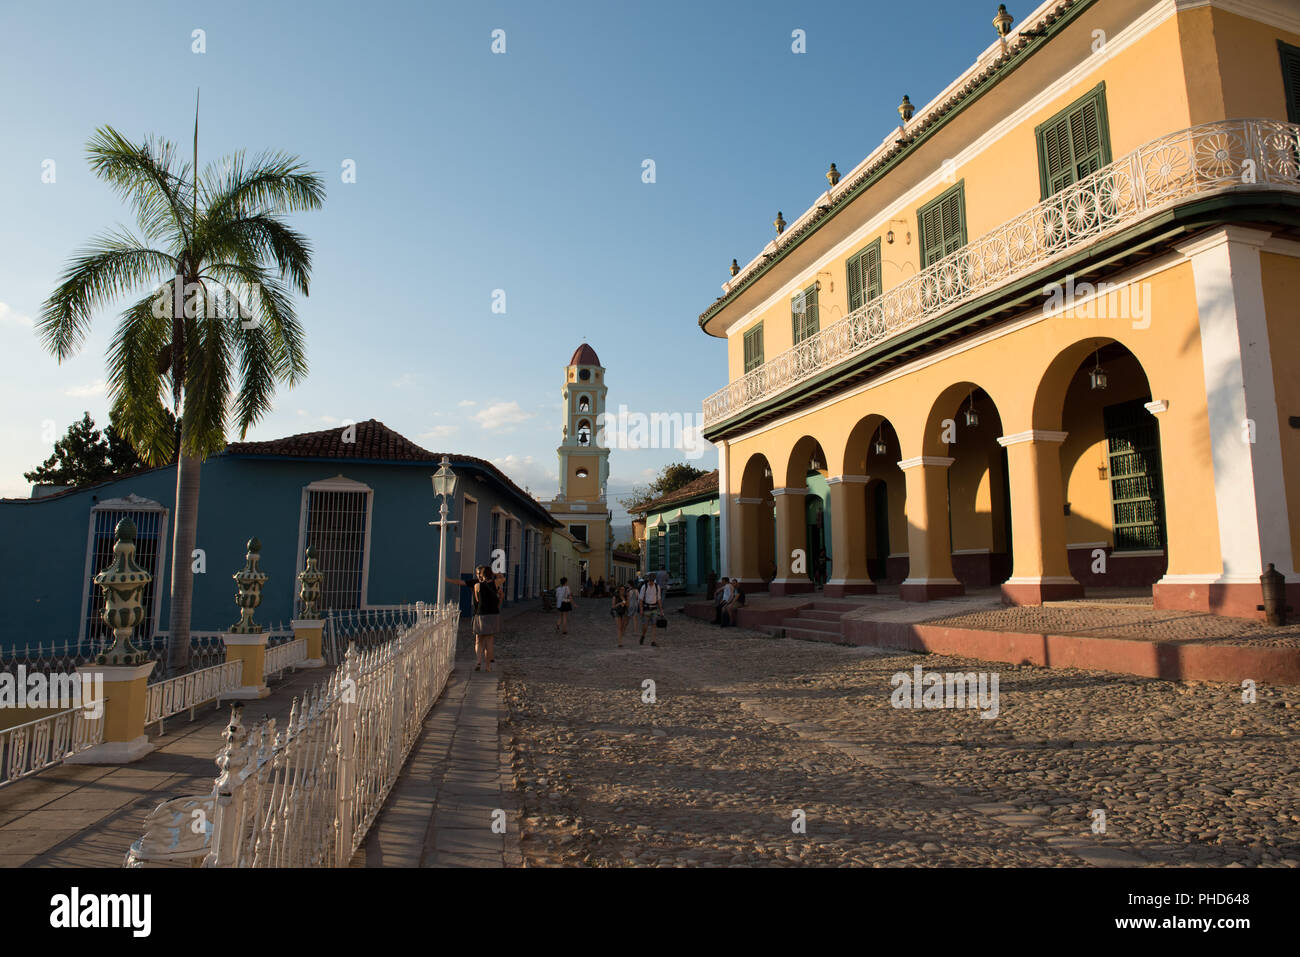 Trinidad, Kuba/15. März 2016: Historisches Haus der reichen Familie Borrell, die koloniale Gebäude beherbergt heute das Romantische Museum (Museo Romántico.) Stockfoto